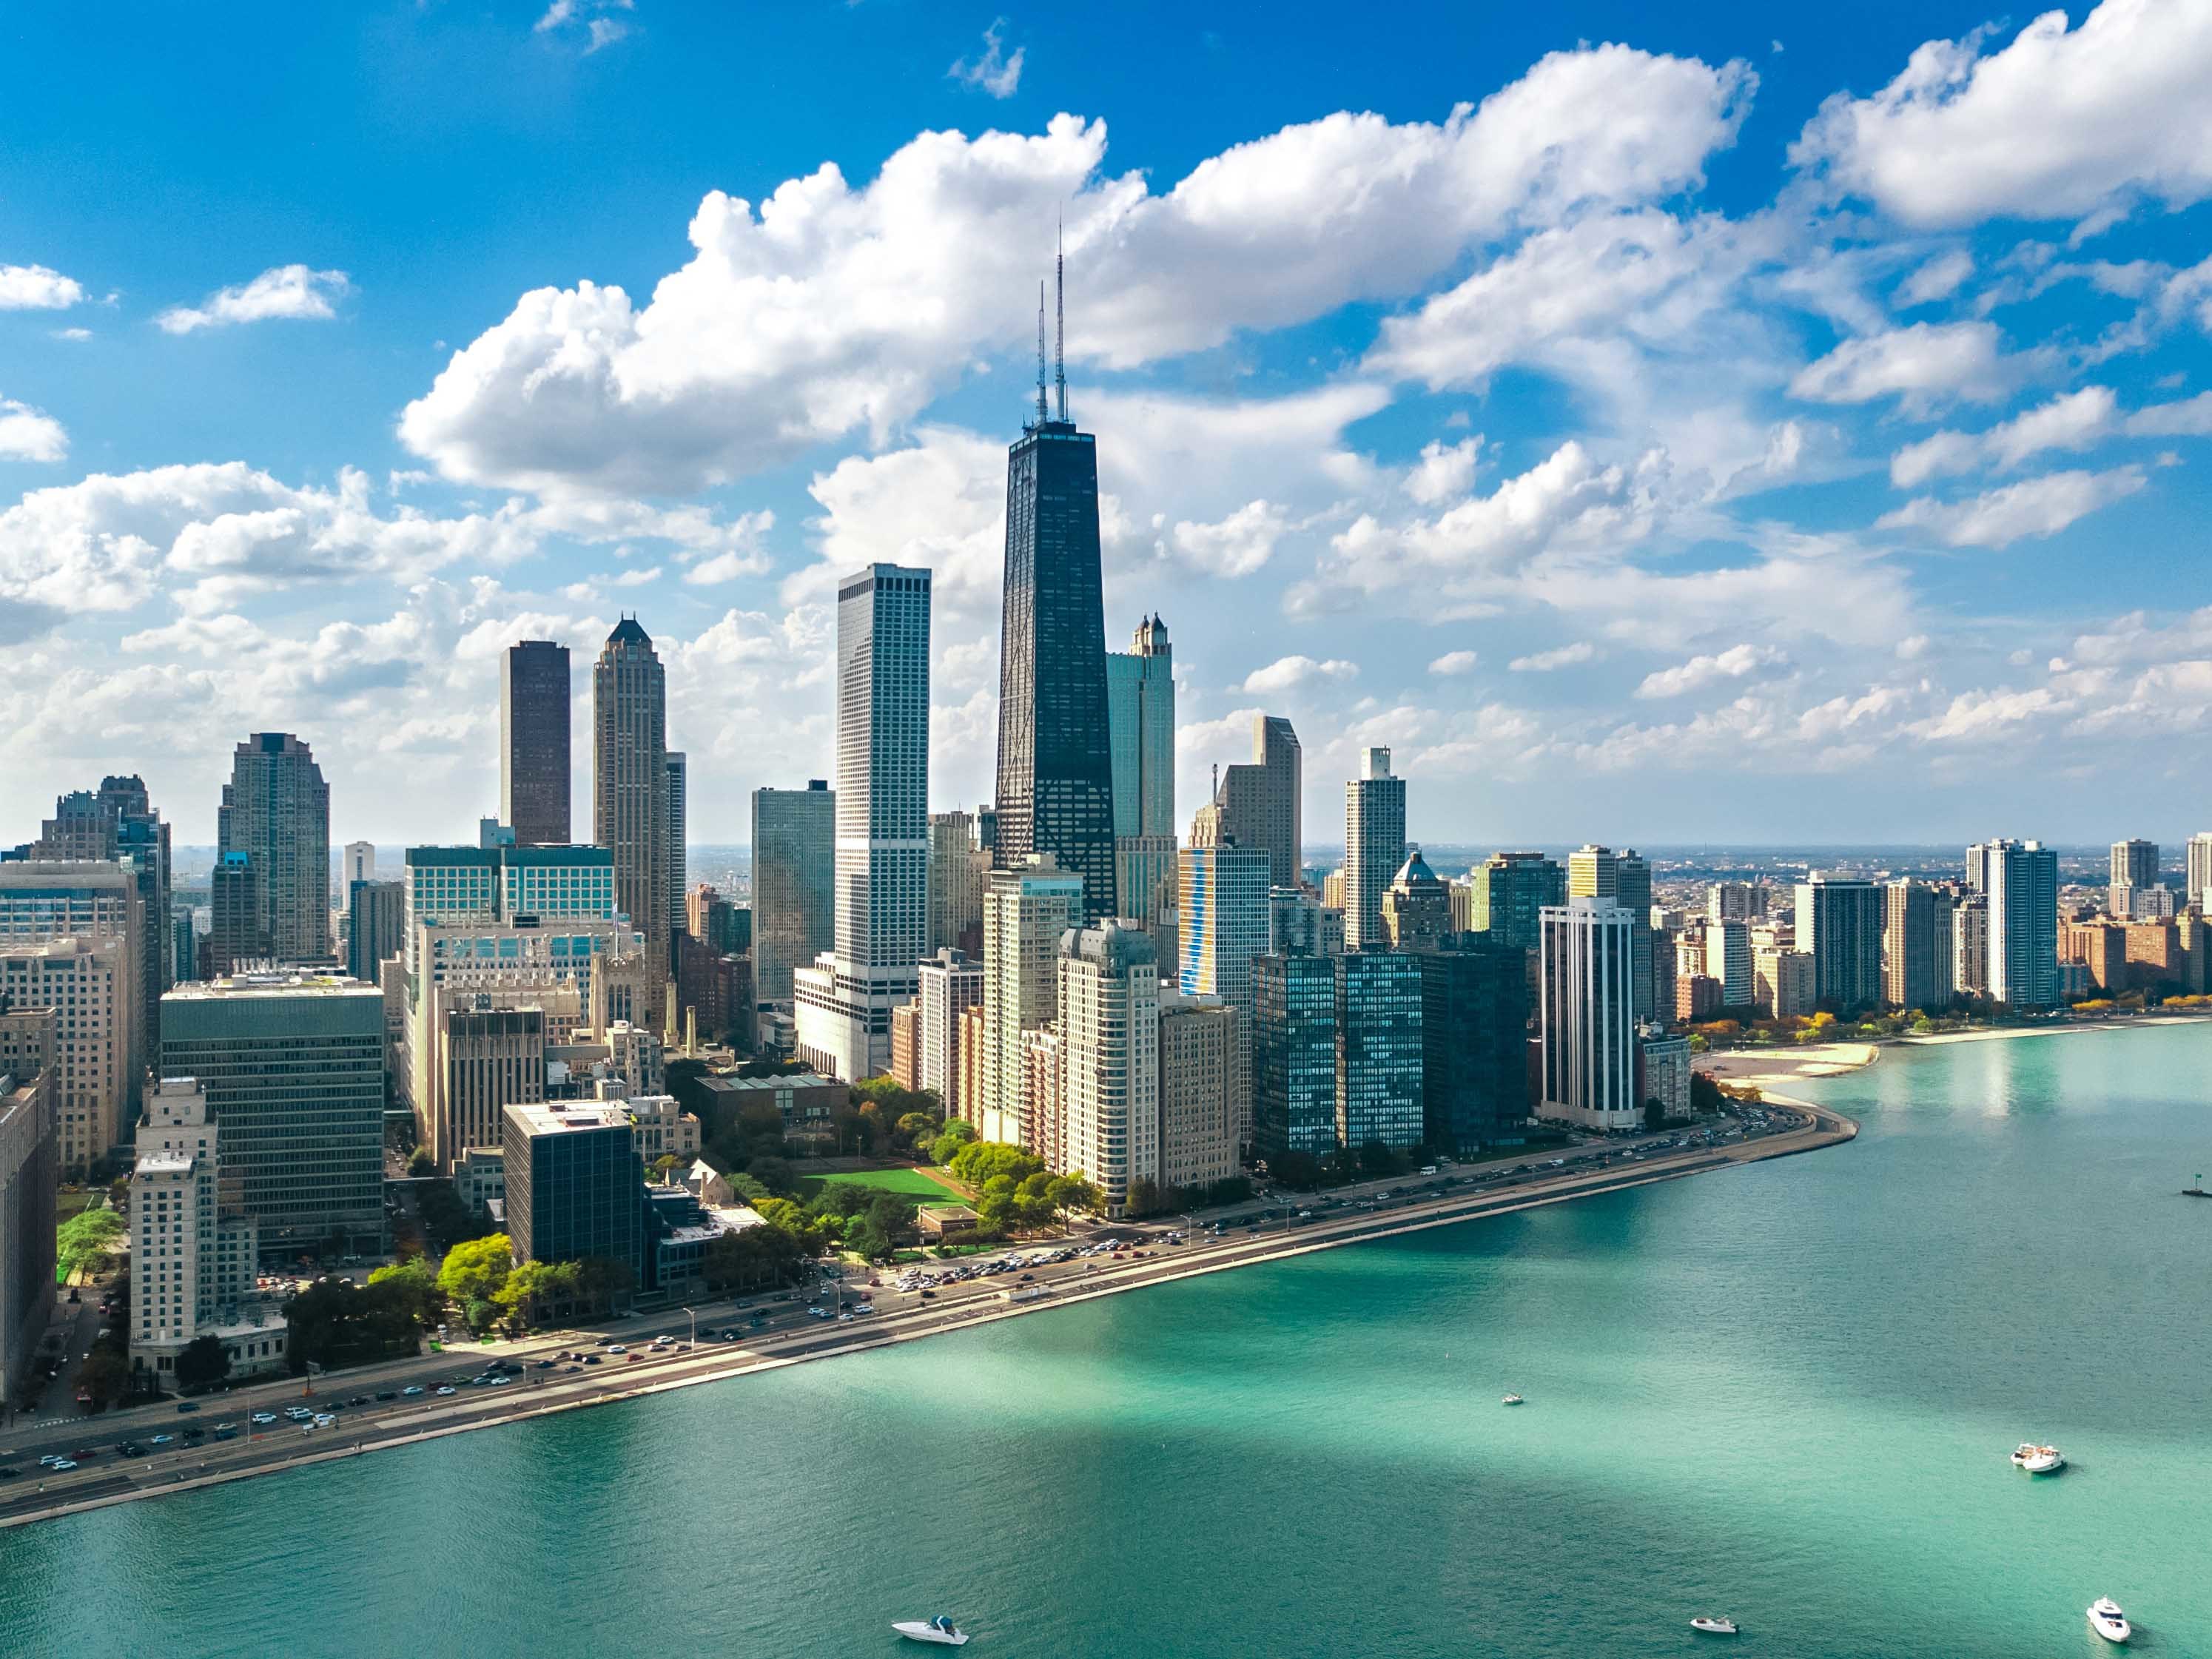 芝加哥是旅游圣地,芝加哥代表的美国中部时间所在的时区是utc/gmt